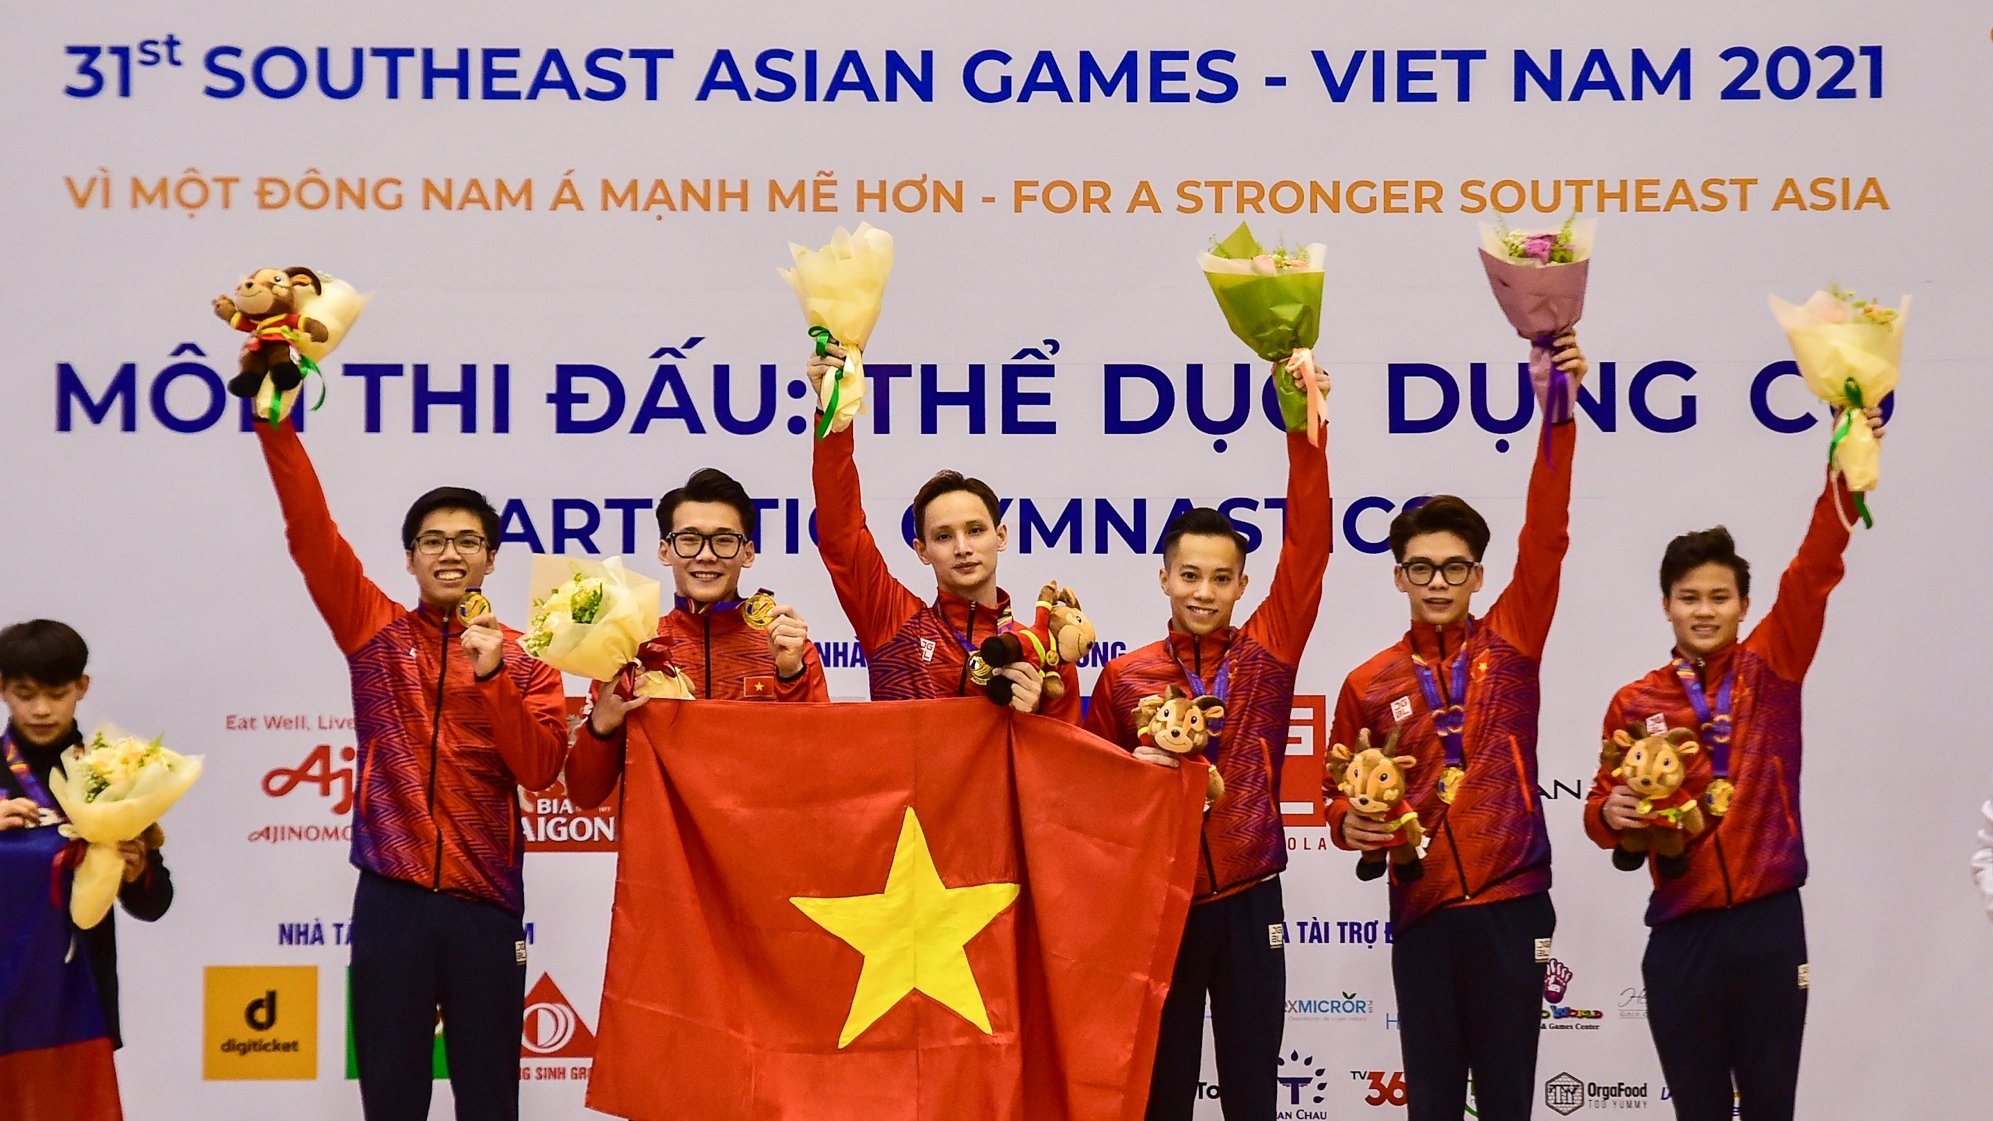 Thể dục dụng cụ Việt Nam vượt Philippines giành huy chương Vàng sít sao